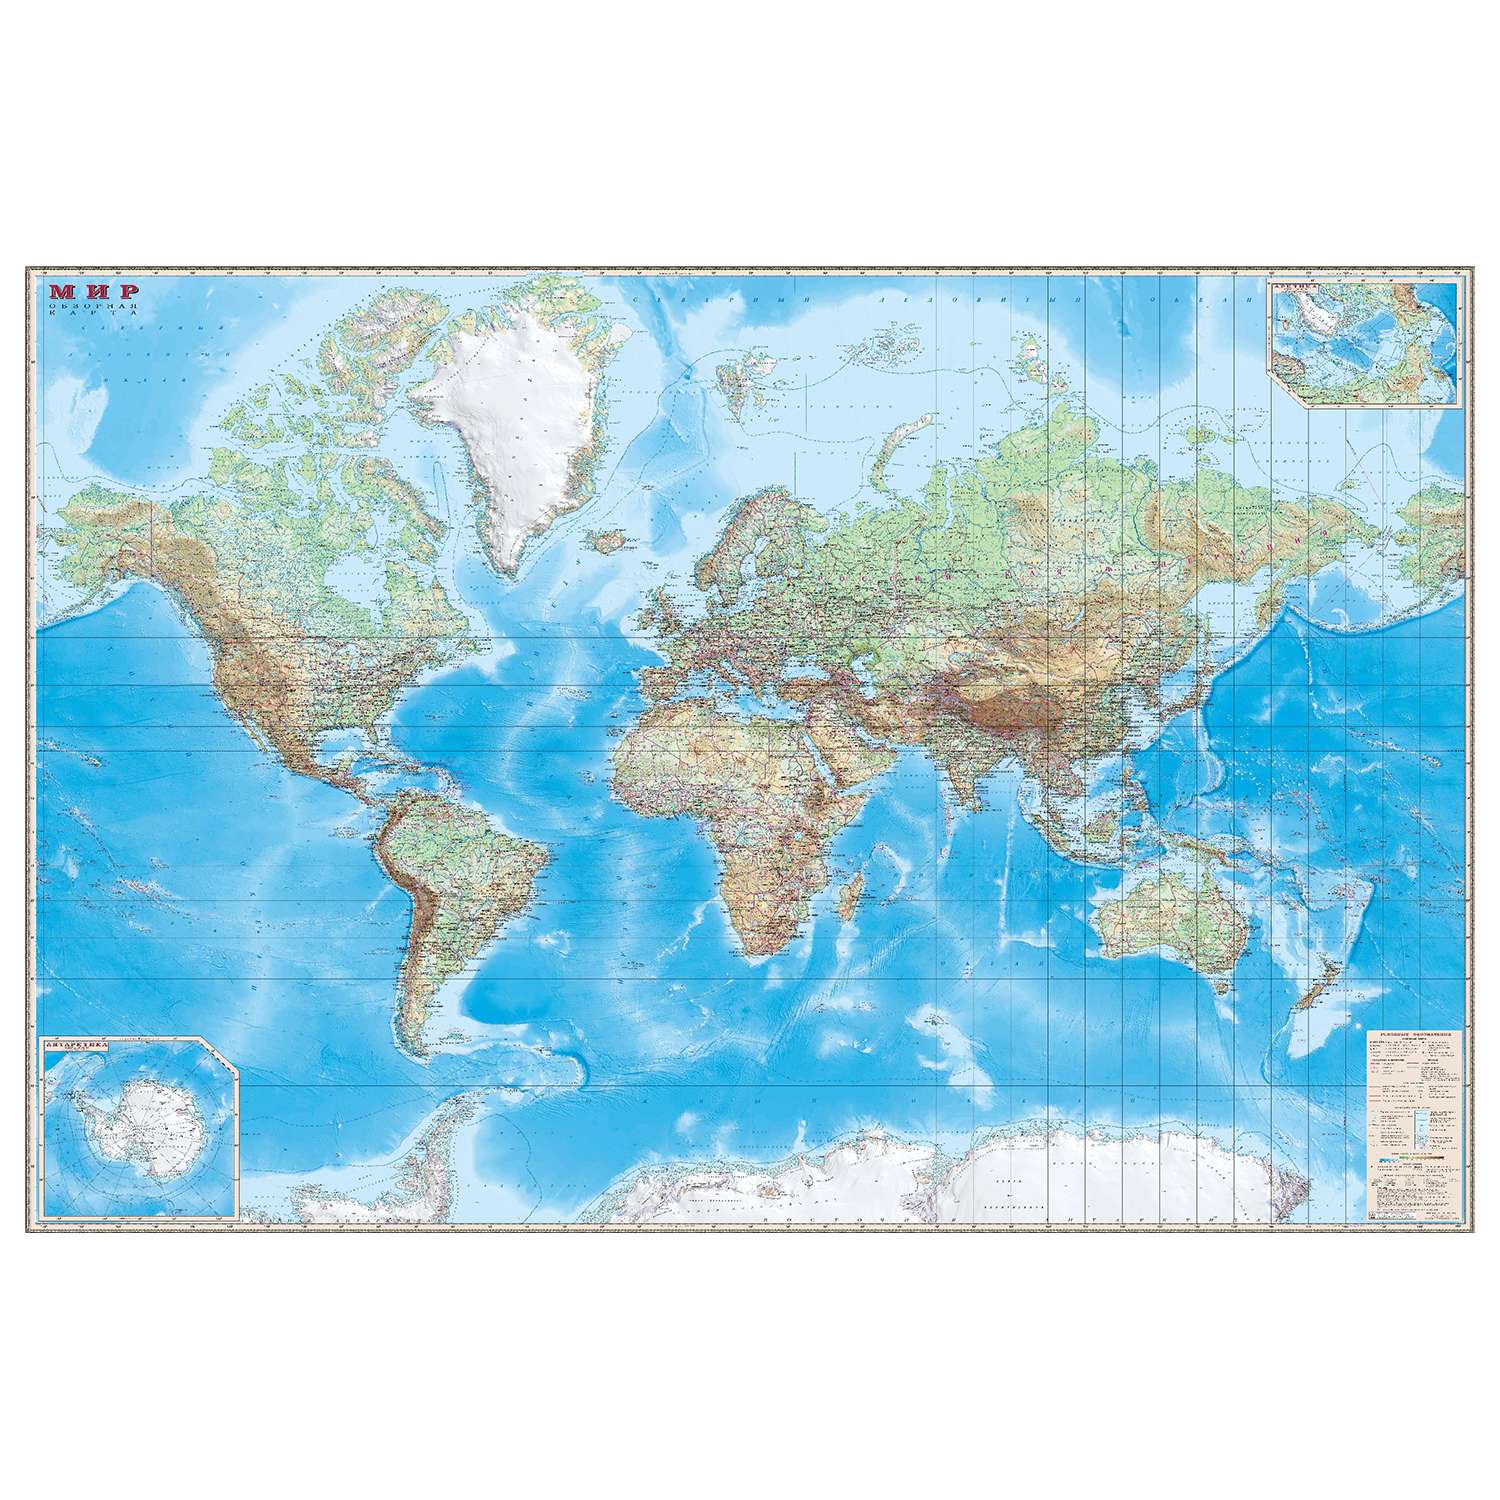 Обзорная карта мира Ди Эм Би 1:15 млн (капсулированная, глянцевая) - фото 1